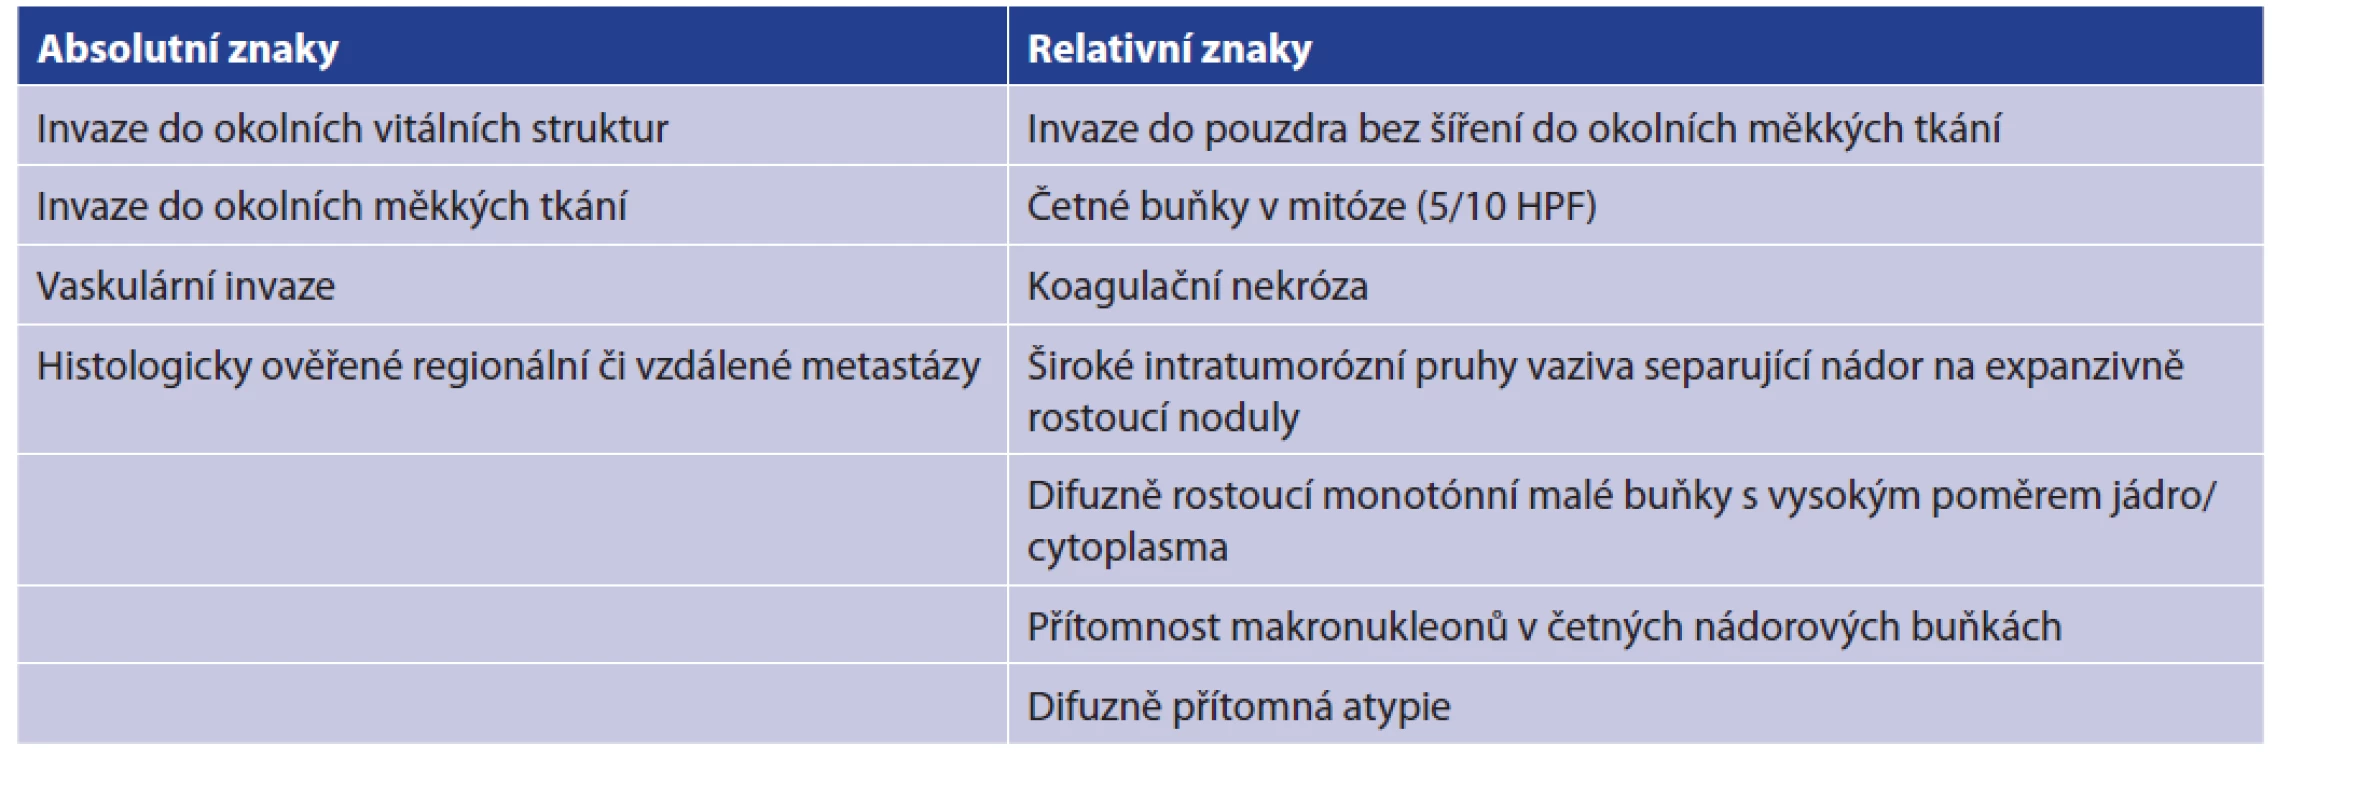 Histopatologická kritéria svědčící pro diagnózu karcinomu<br>
Tab. 1: Histopathological criteria for the diagnosis of parathyroid carcinoma